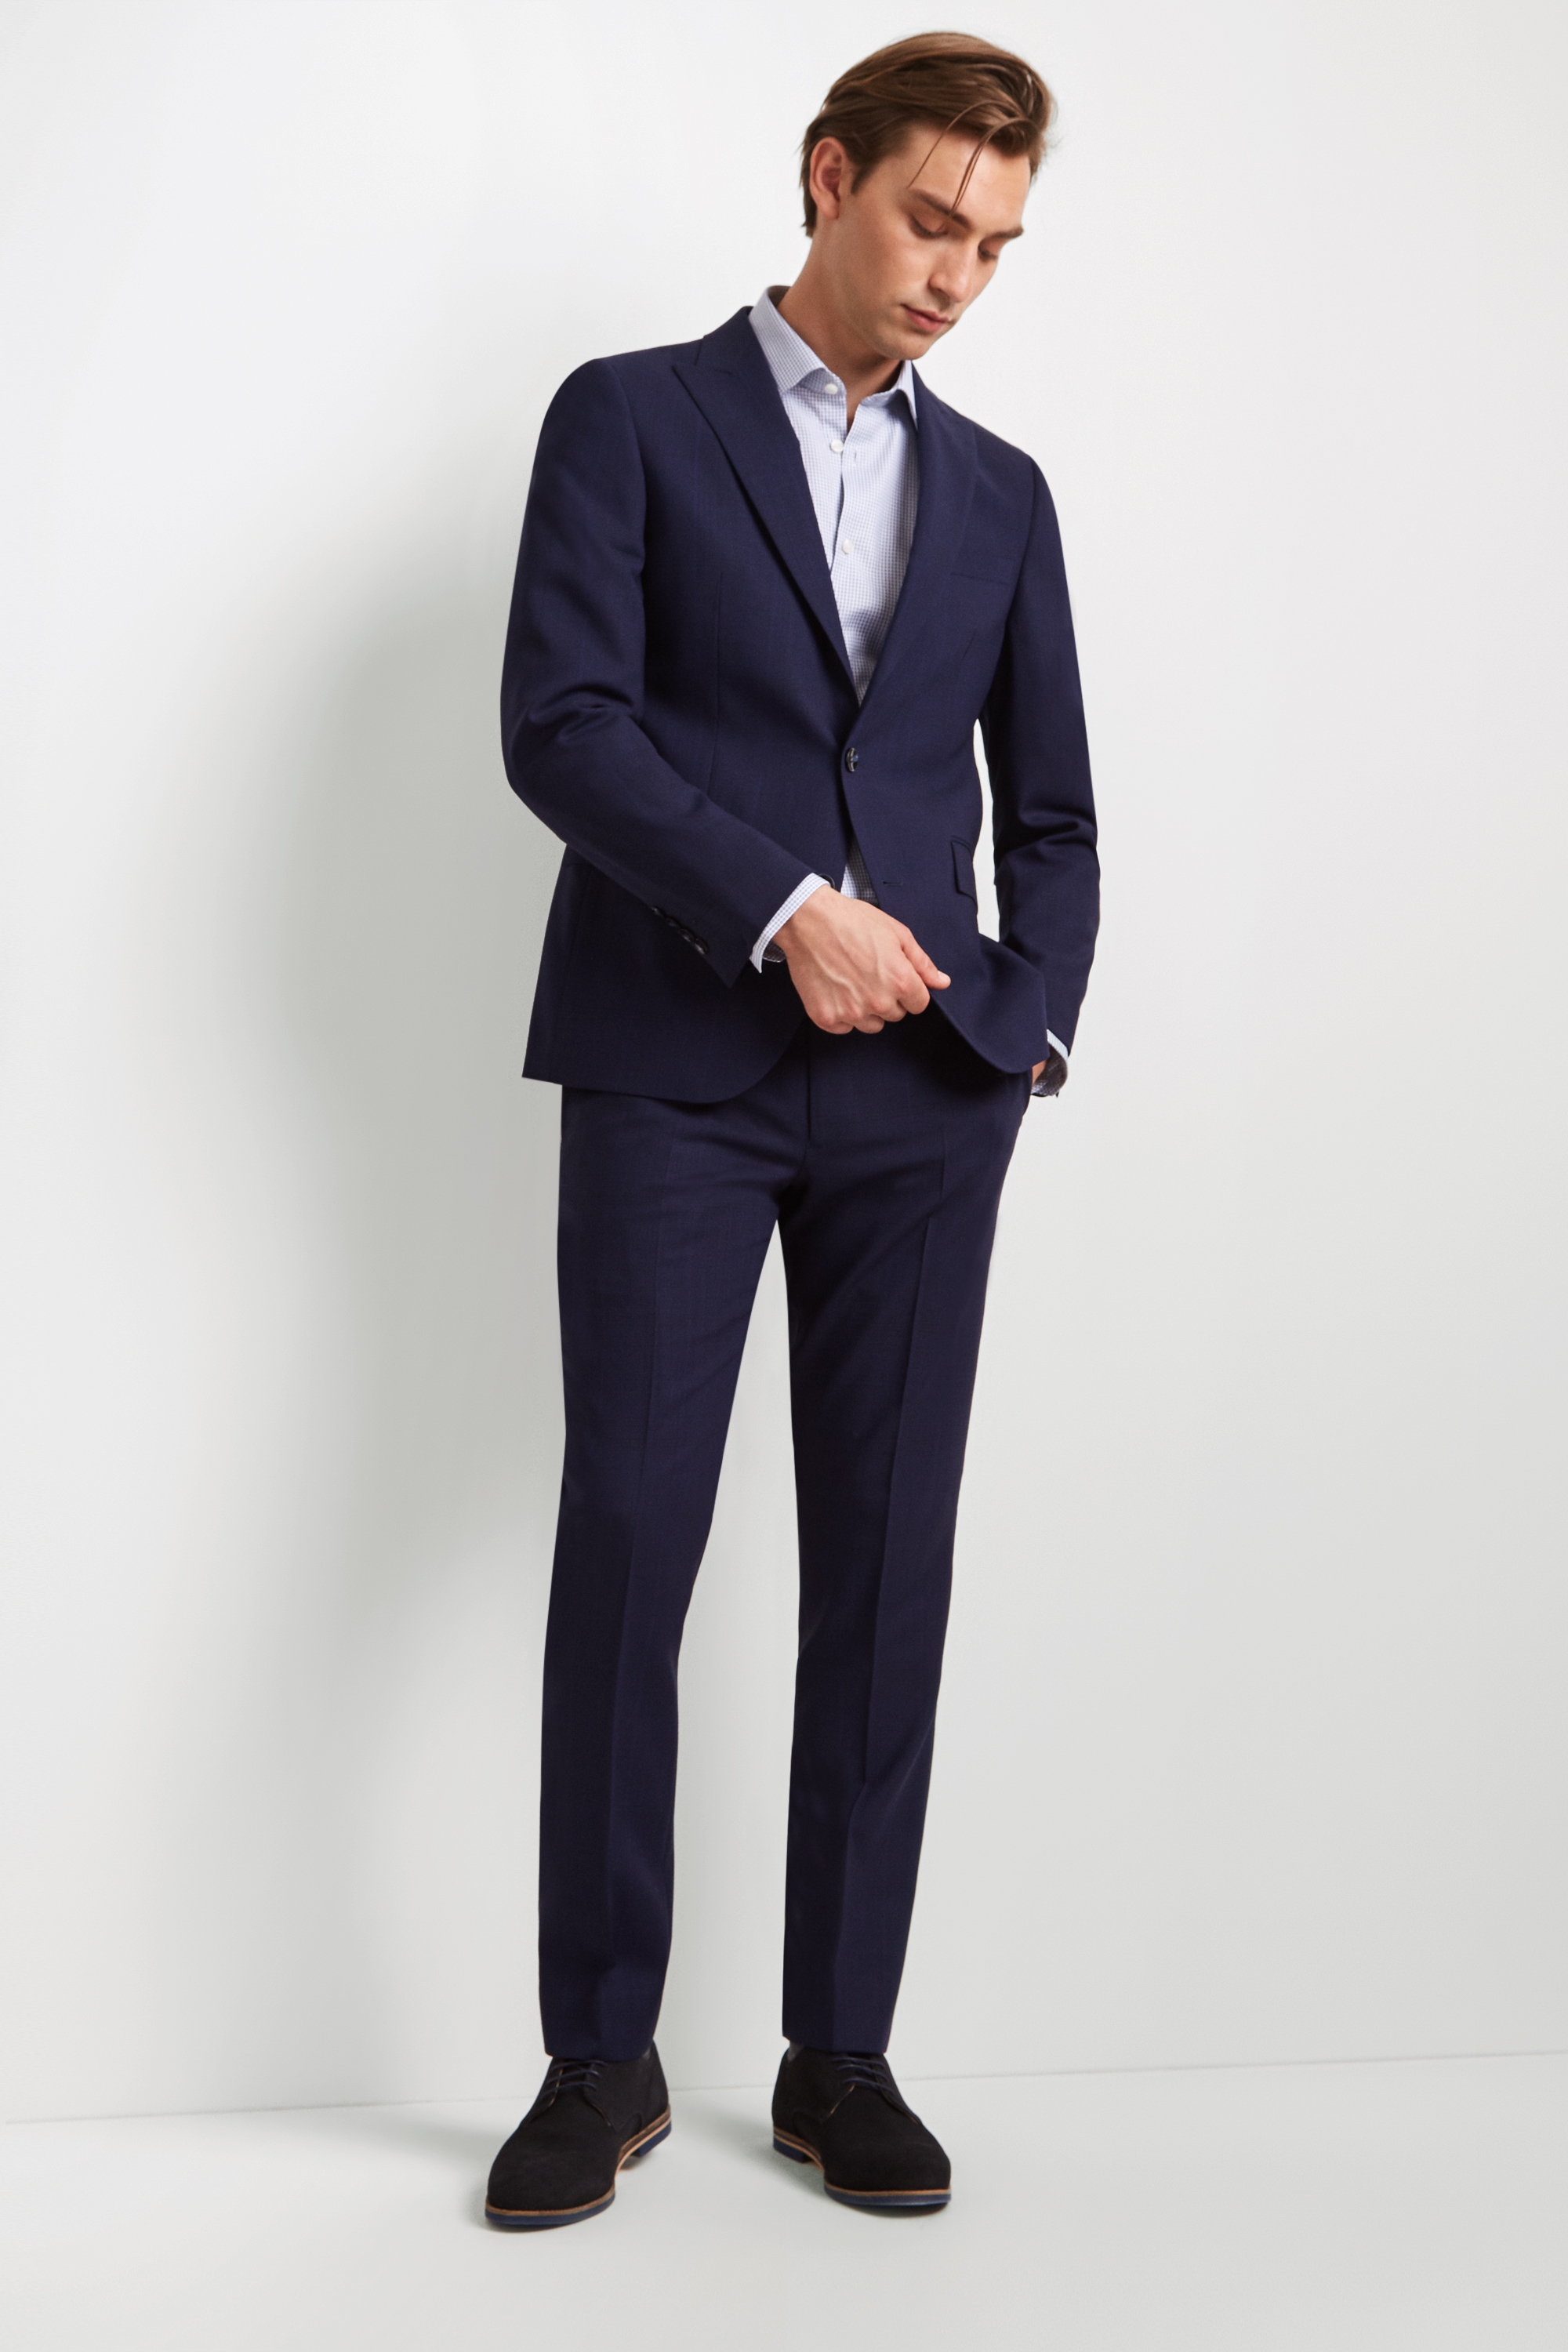 DKNY Slim Fit Blue Check Suit